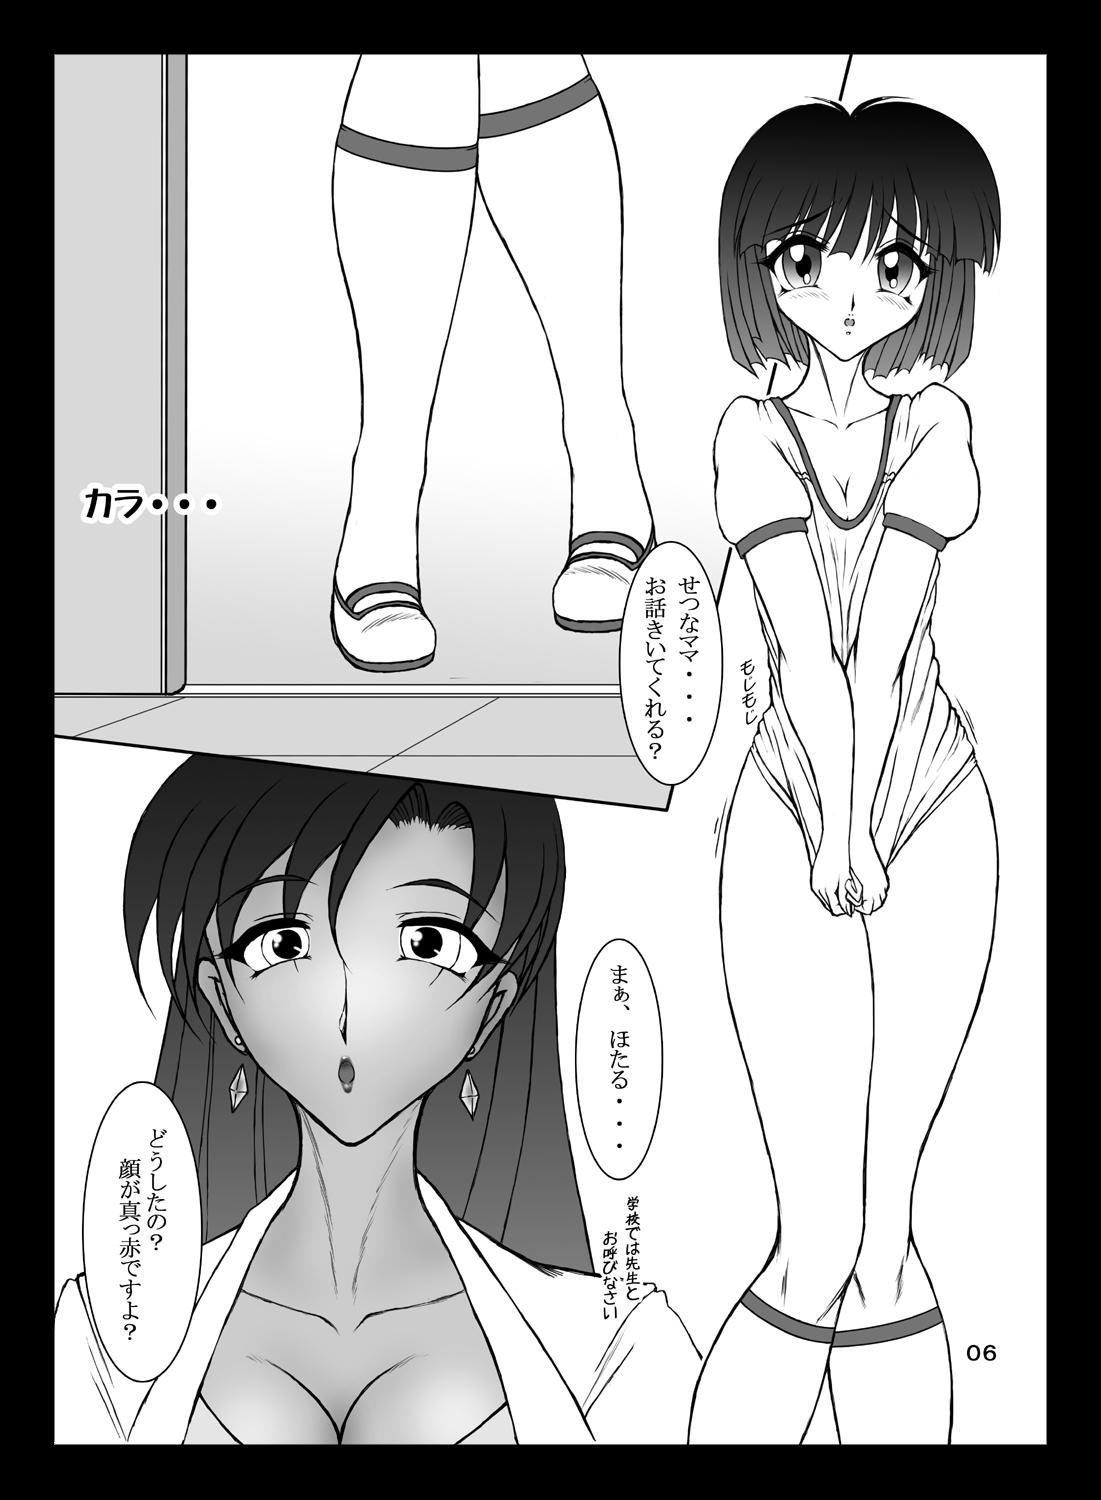 Nalgas Setsuna-sensei no Hachimitsu Jugyou - Sailor moon Ebony - Page 5